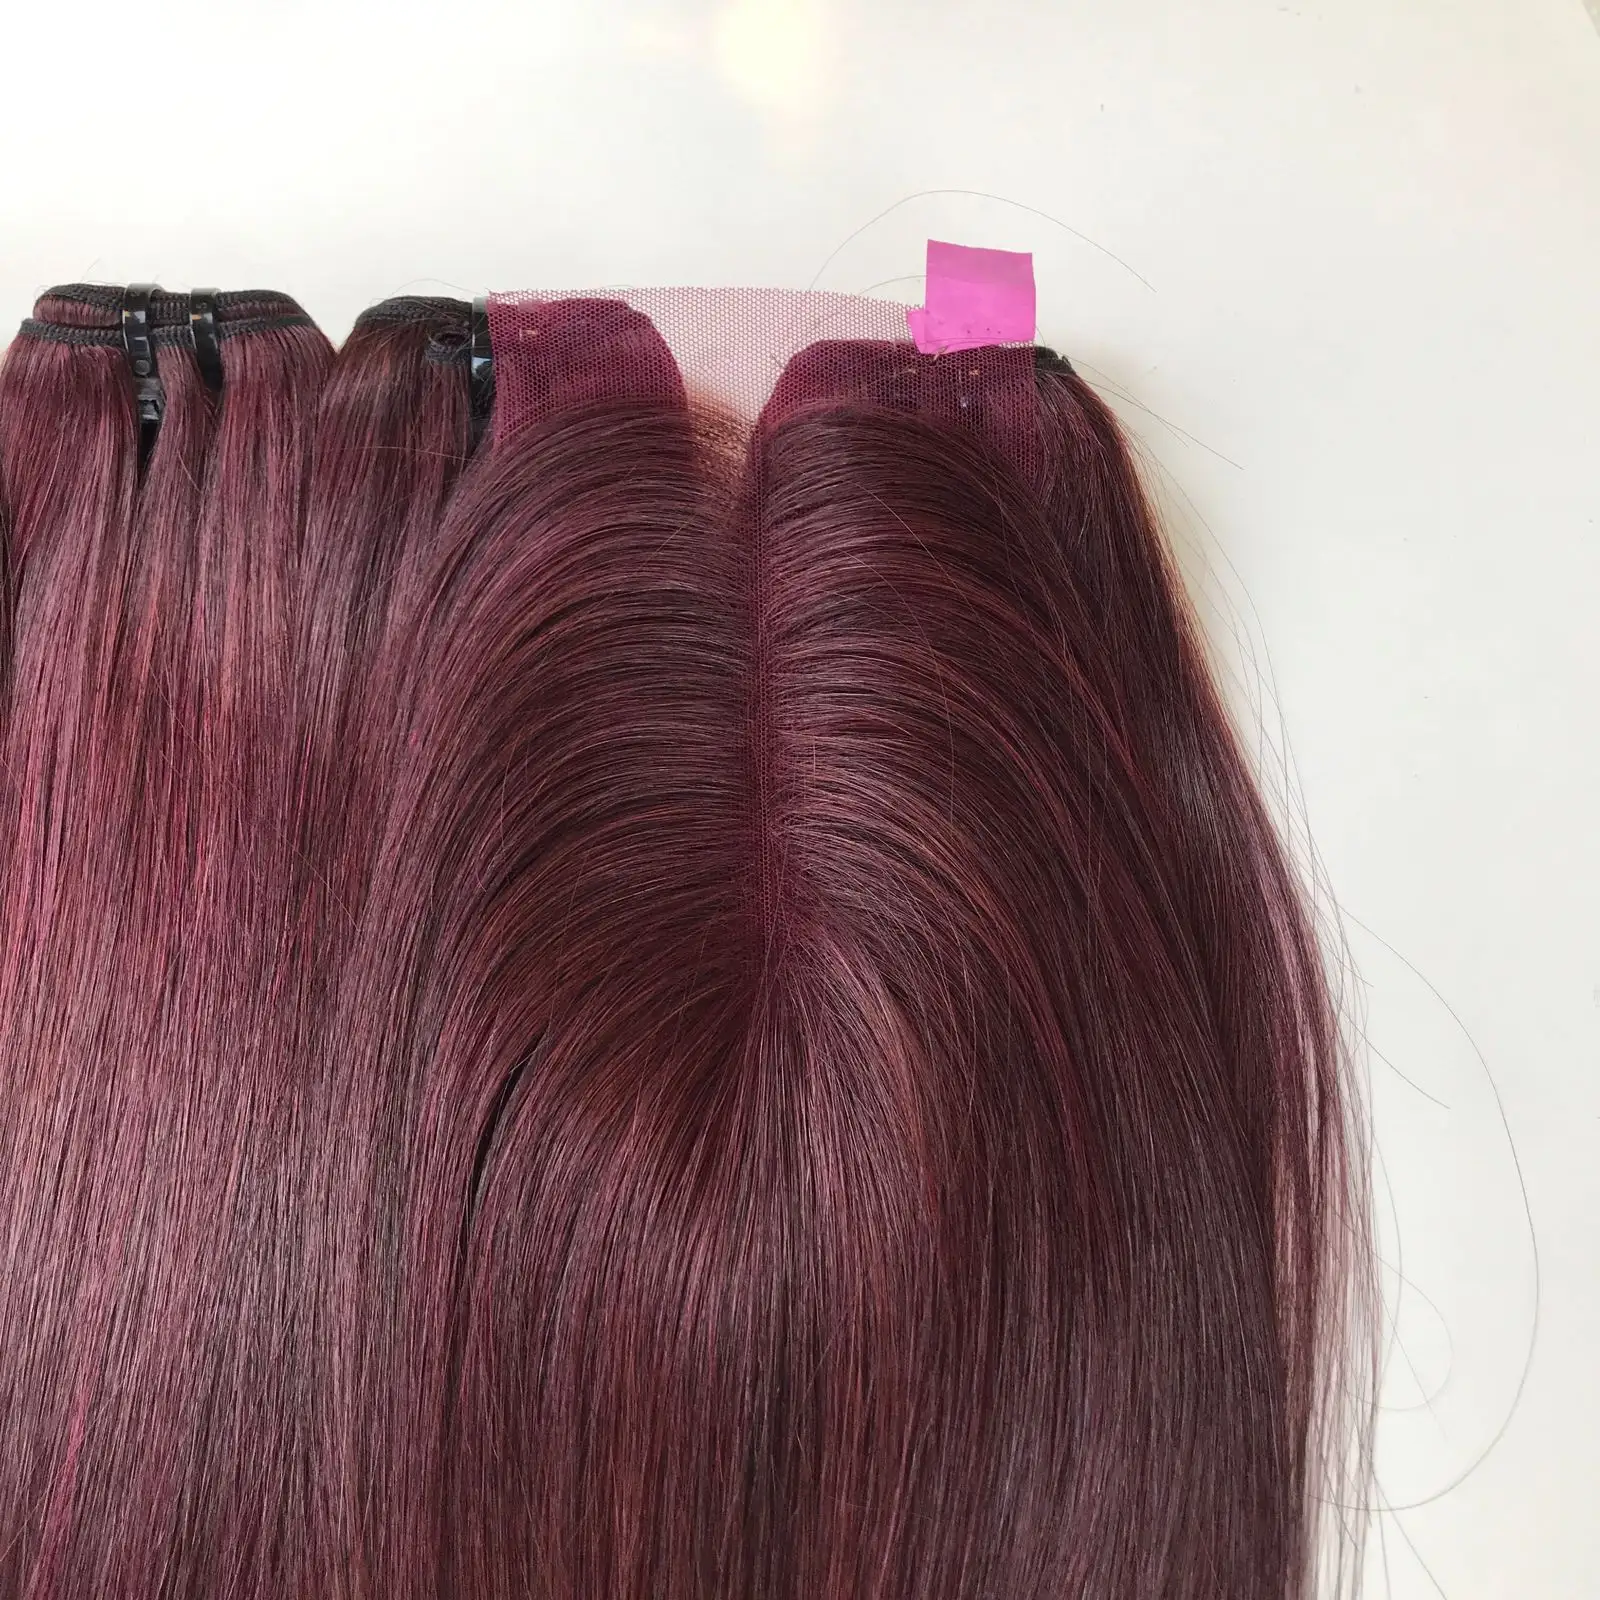 100% вьетнамские человеческие волосы, Самые продаваемые товары, супер двойная вытянута, прямые пряди, высококачественные волосы для наращивания